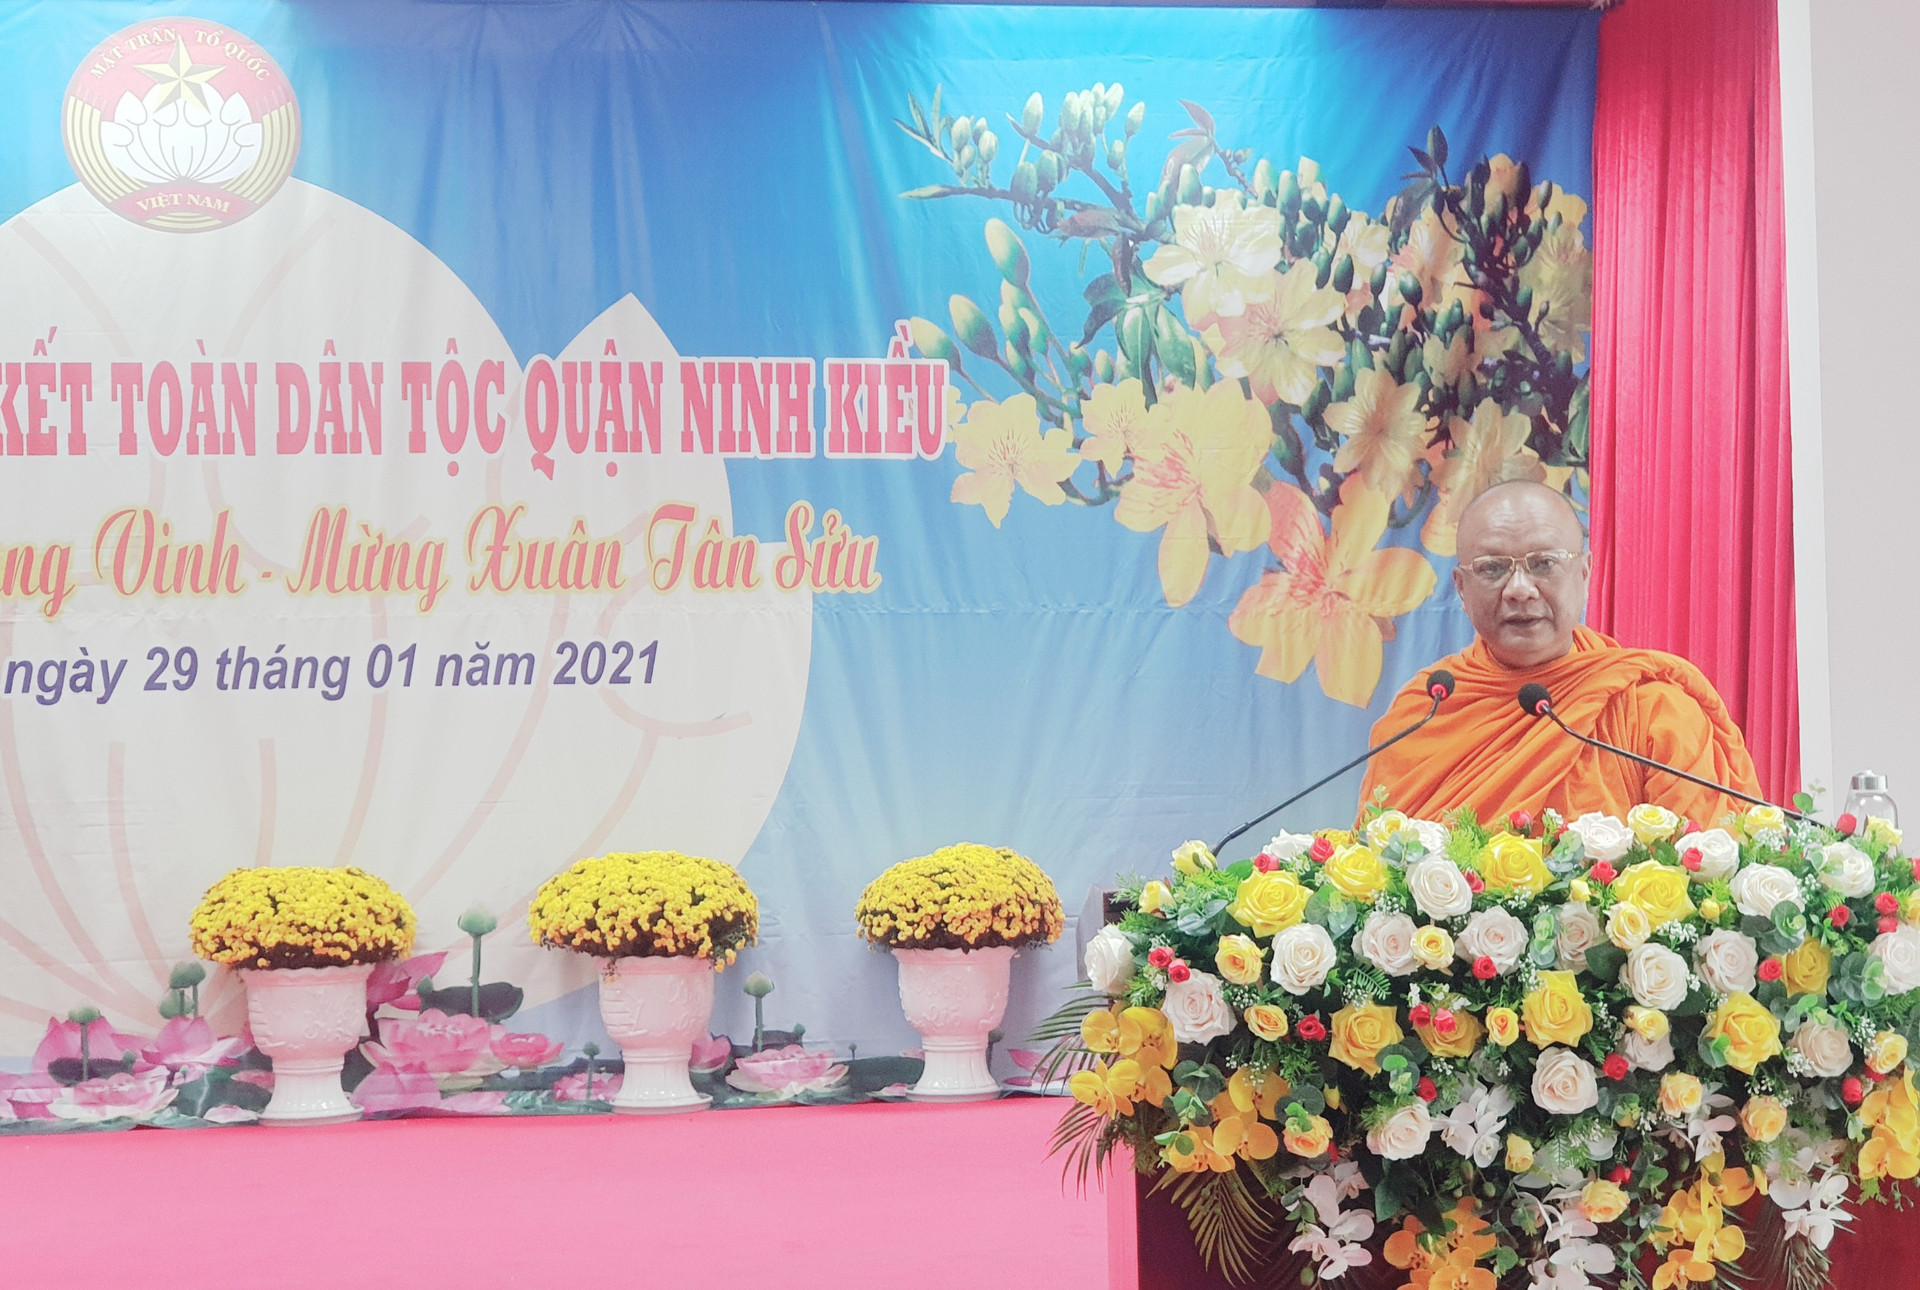 Thượng tọa Lý Hùng, đại diện ban Trị sự GHPG Việt Nam quận Ninh Kiều chia sẻ niềm vui tại ngày hội.